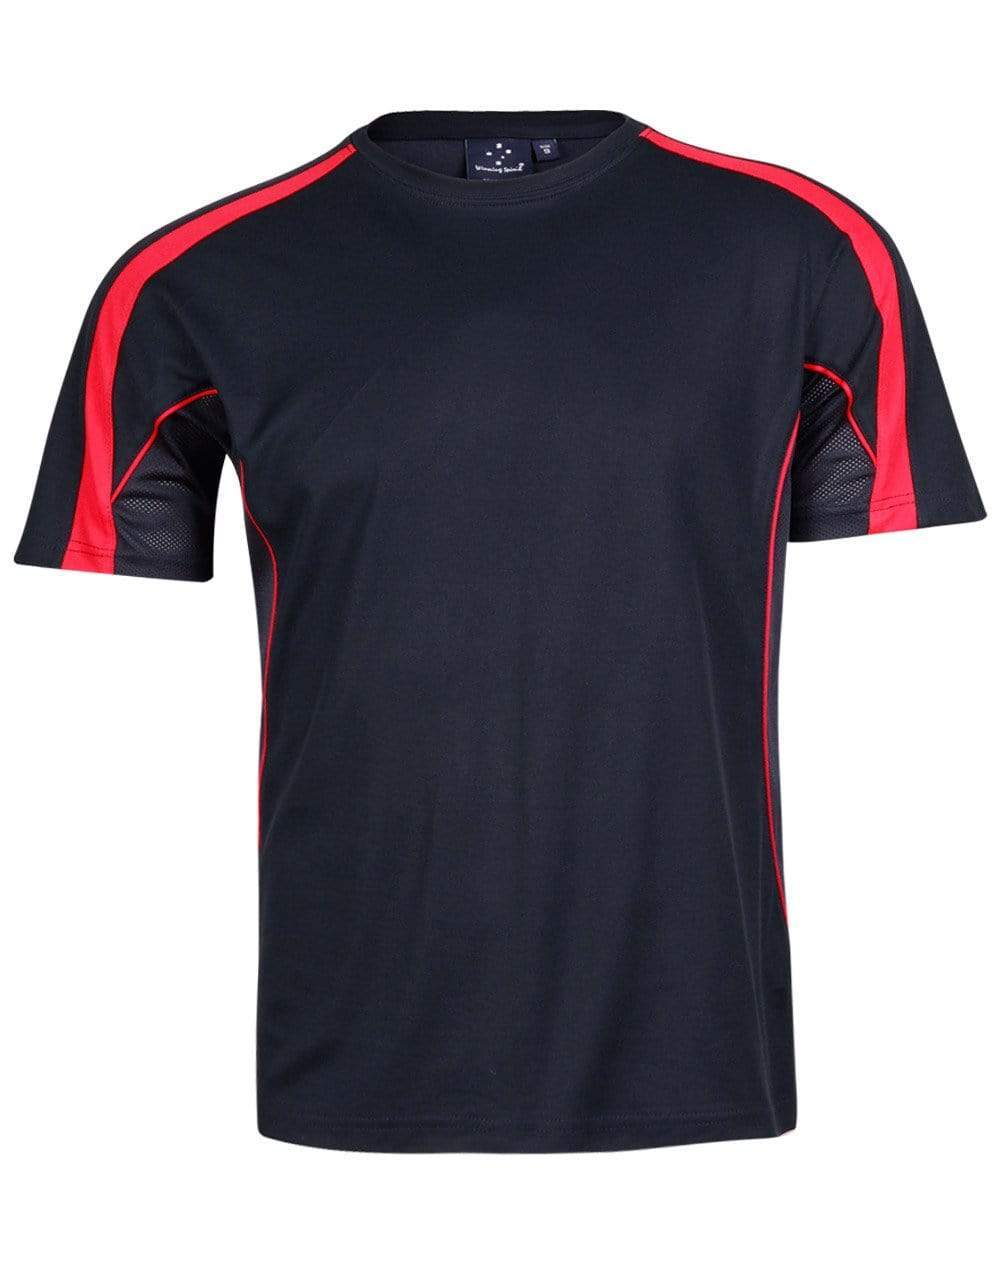 Legend Tee Shirt Men's Ts53 Casual Wear Winning Spirit Navy/Red XS 